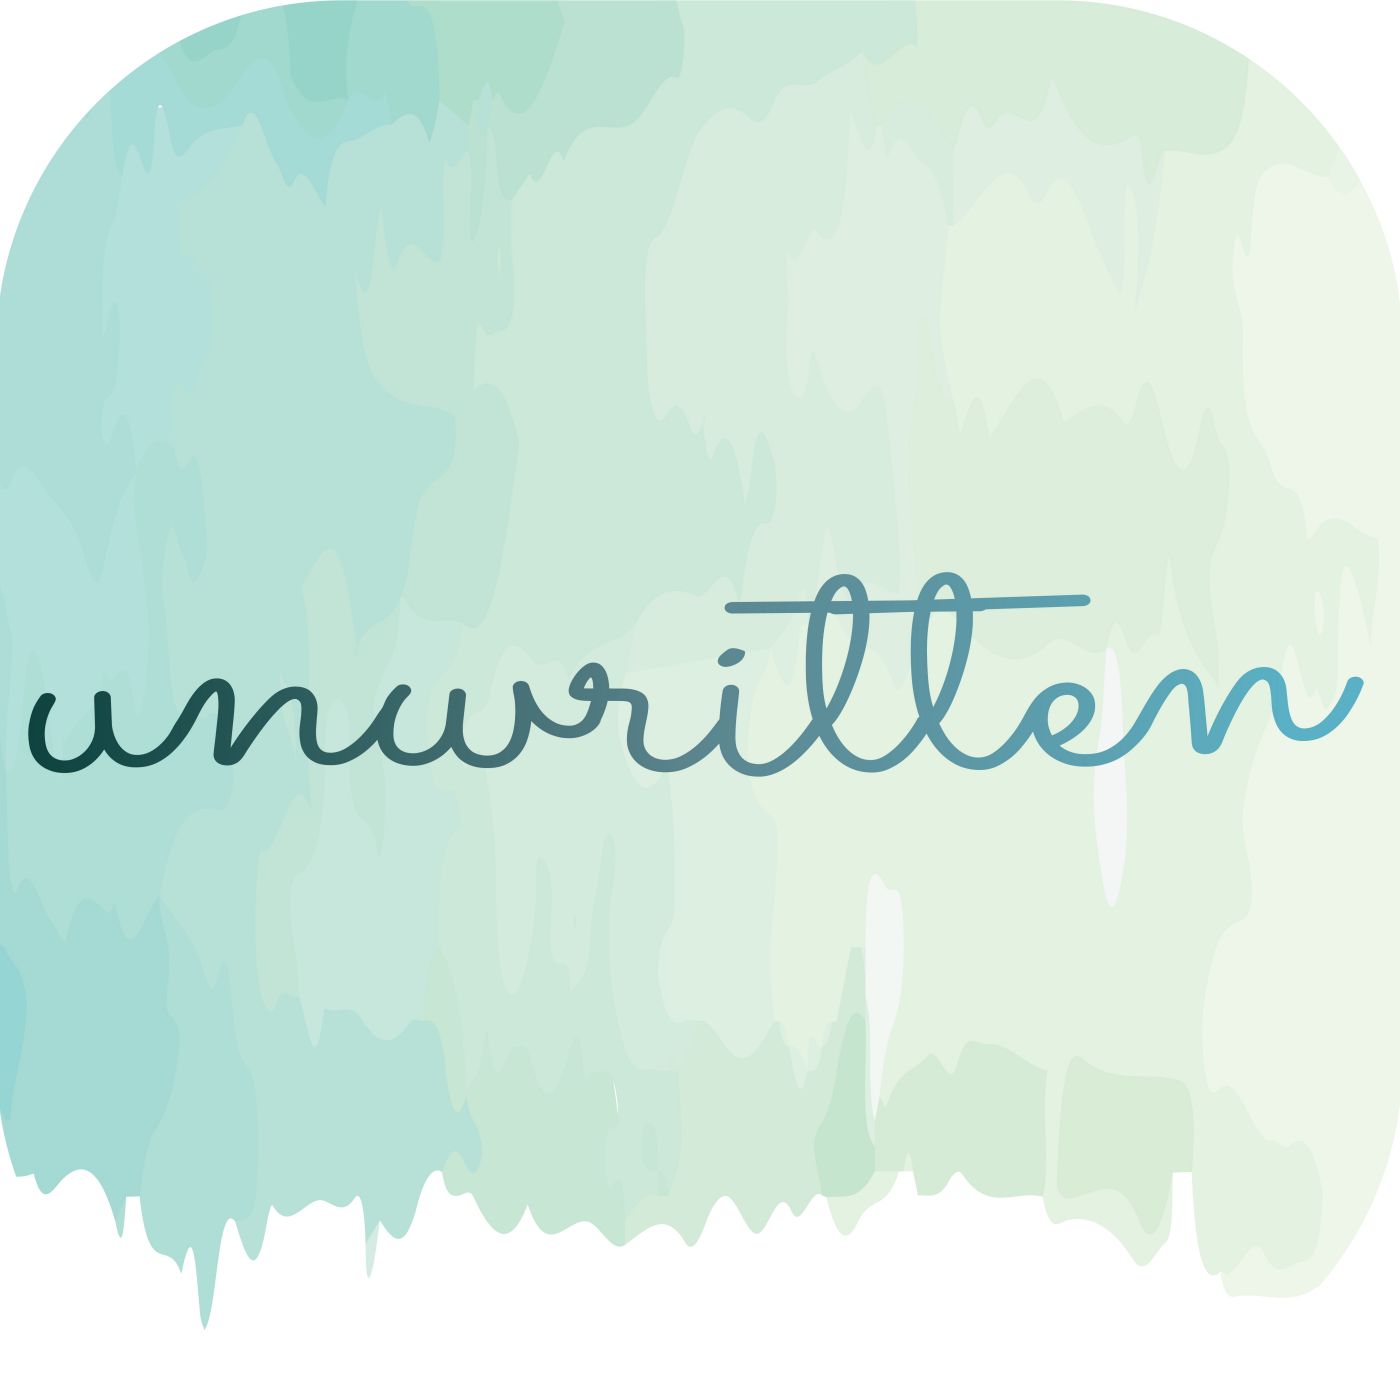 dwm presents Unwritten